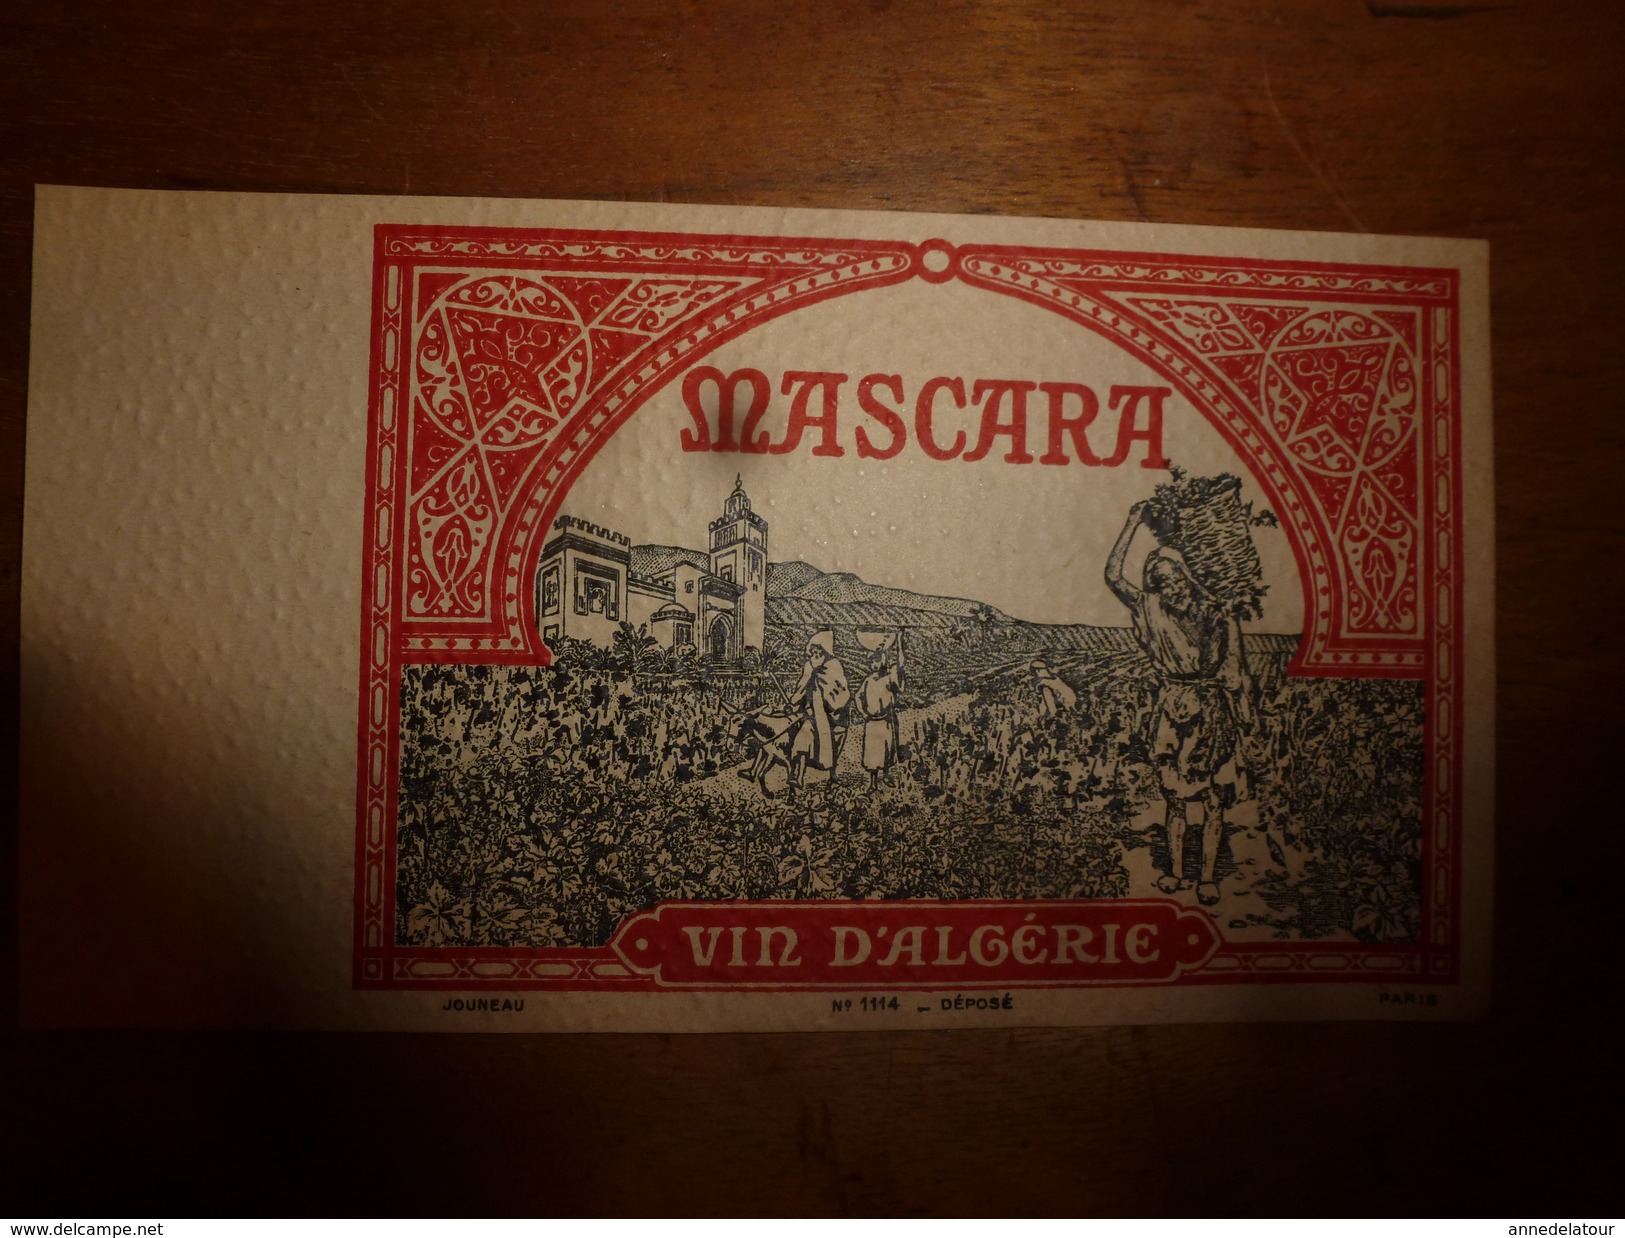 1920 ? Spécimen étiquette De Vin  D'ALGERIE - MASCARA   N° 1114, Déposé,  Imprimerie G.Jouneau  3 Rue Papin à Paris - Popoli